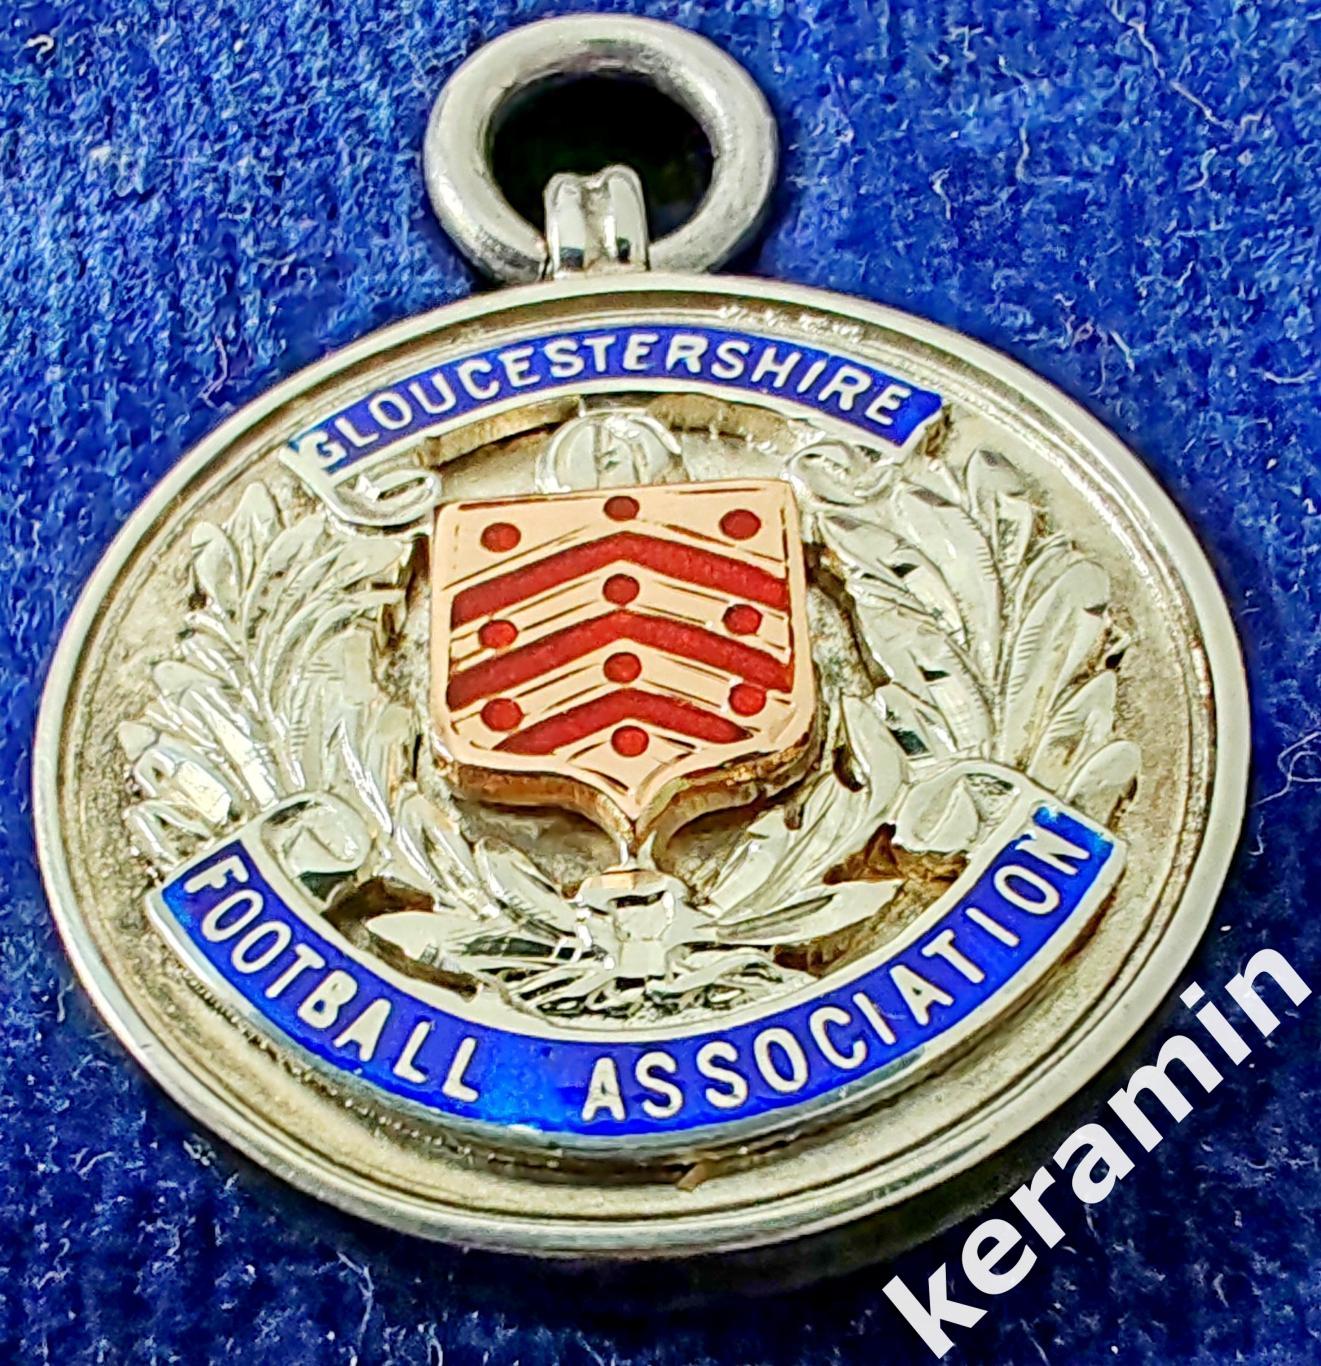 1936-37 медальон из 9-каратного золота и эмали Футбольной ассоциации Глостершира 1